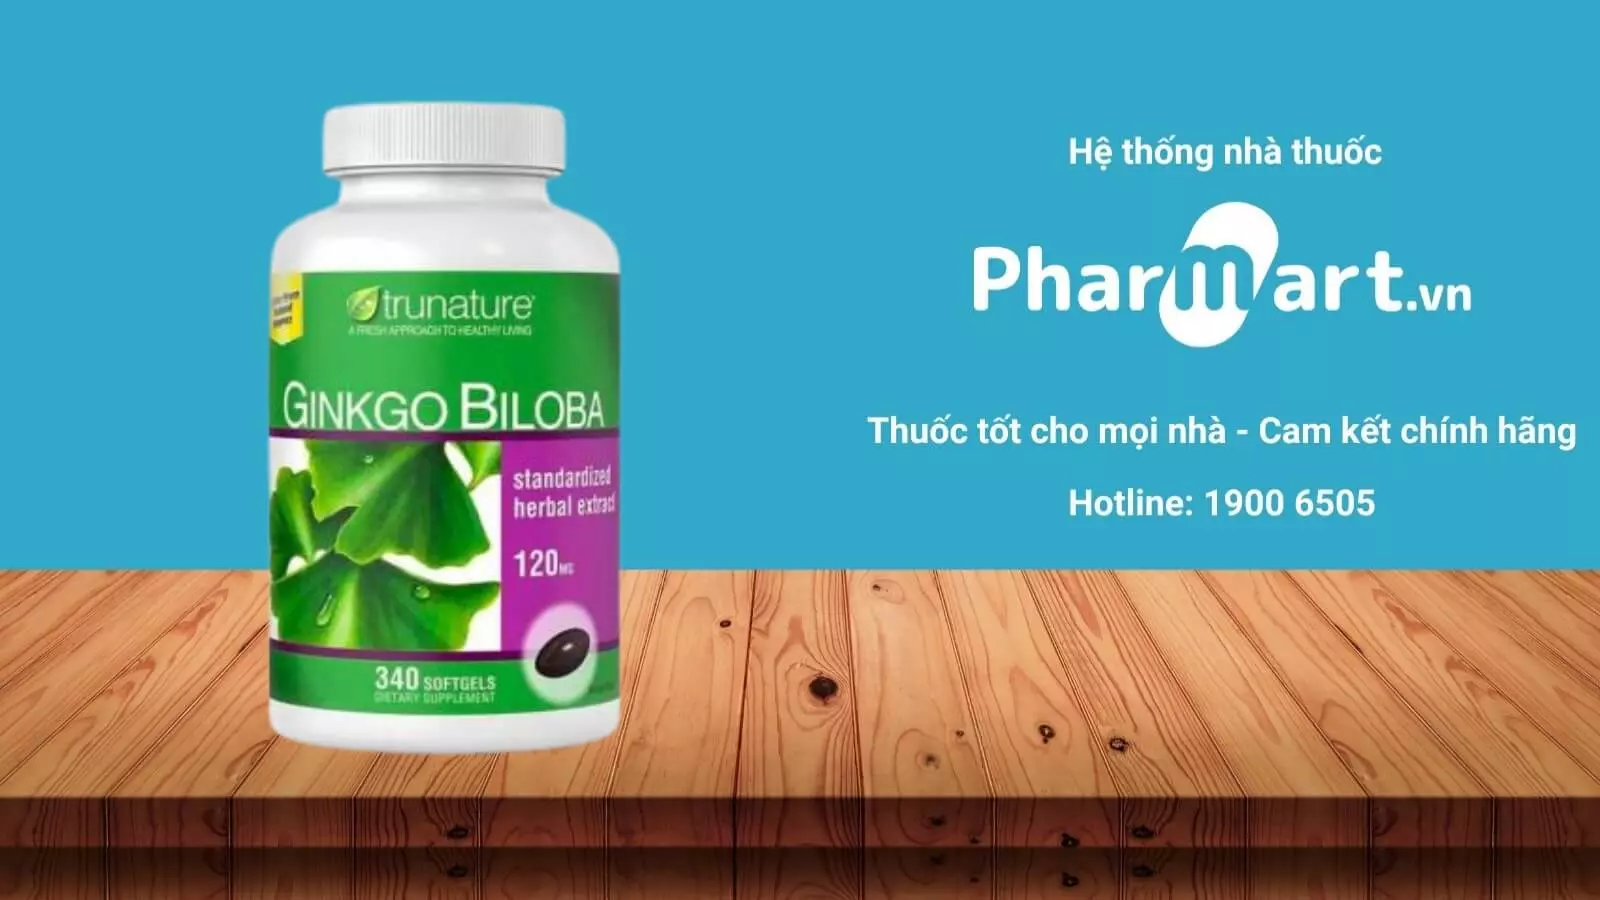 Viên uống Bổ não Ginkgo Biloba Trunature hiện đang được phân phối chính hãng tại Pharmart.vn